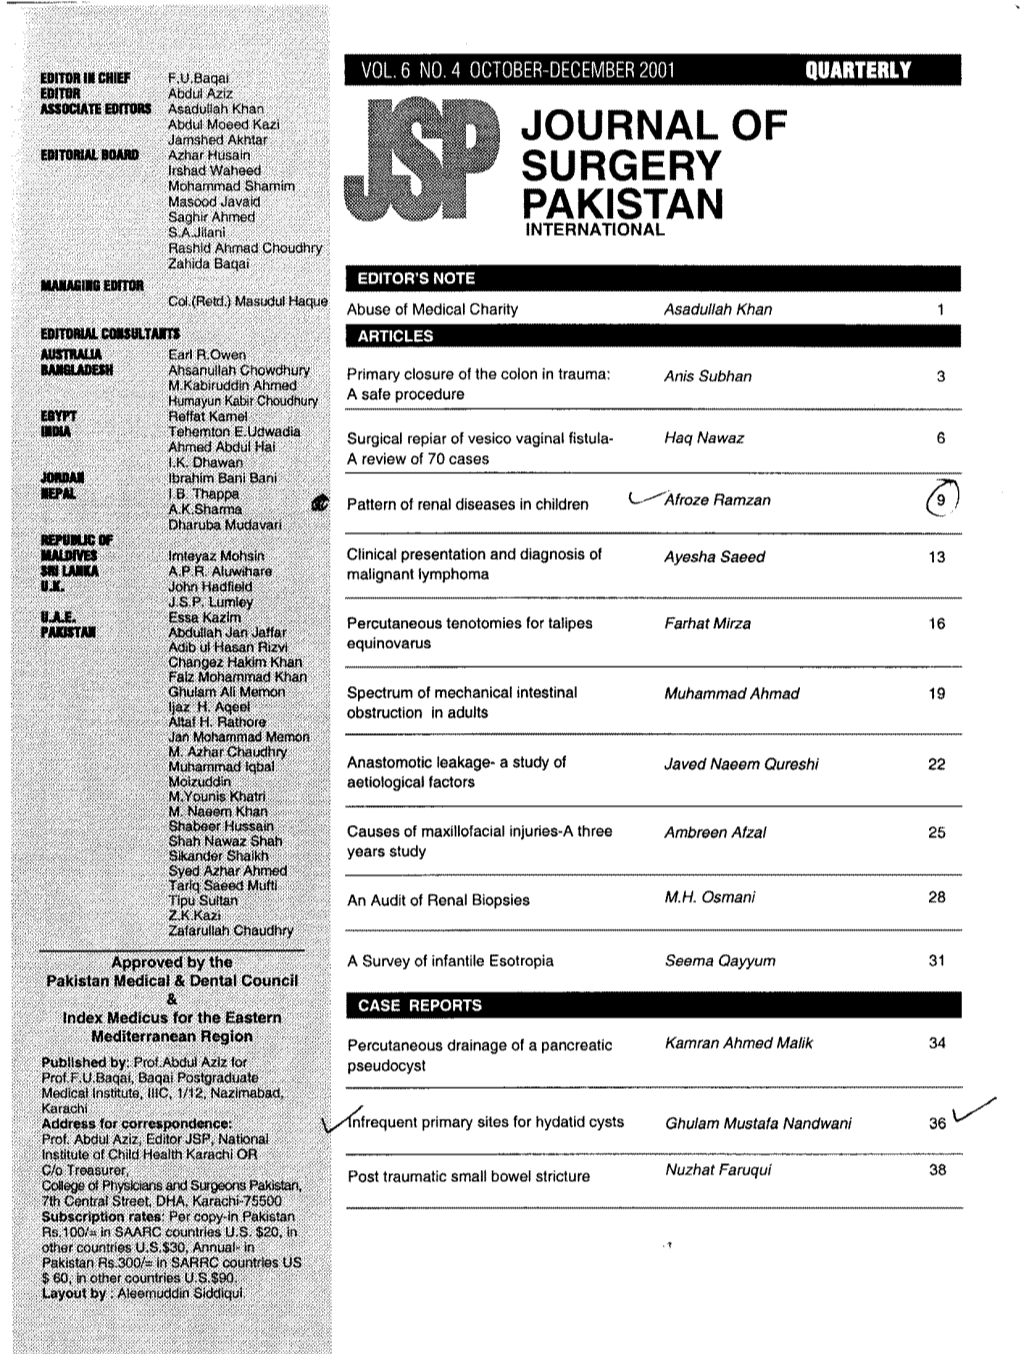 October-December 2001 Quarterly Journal of Surgery Pakistan International